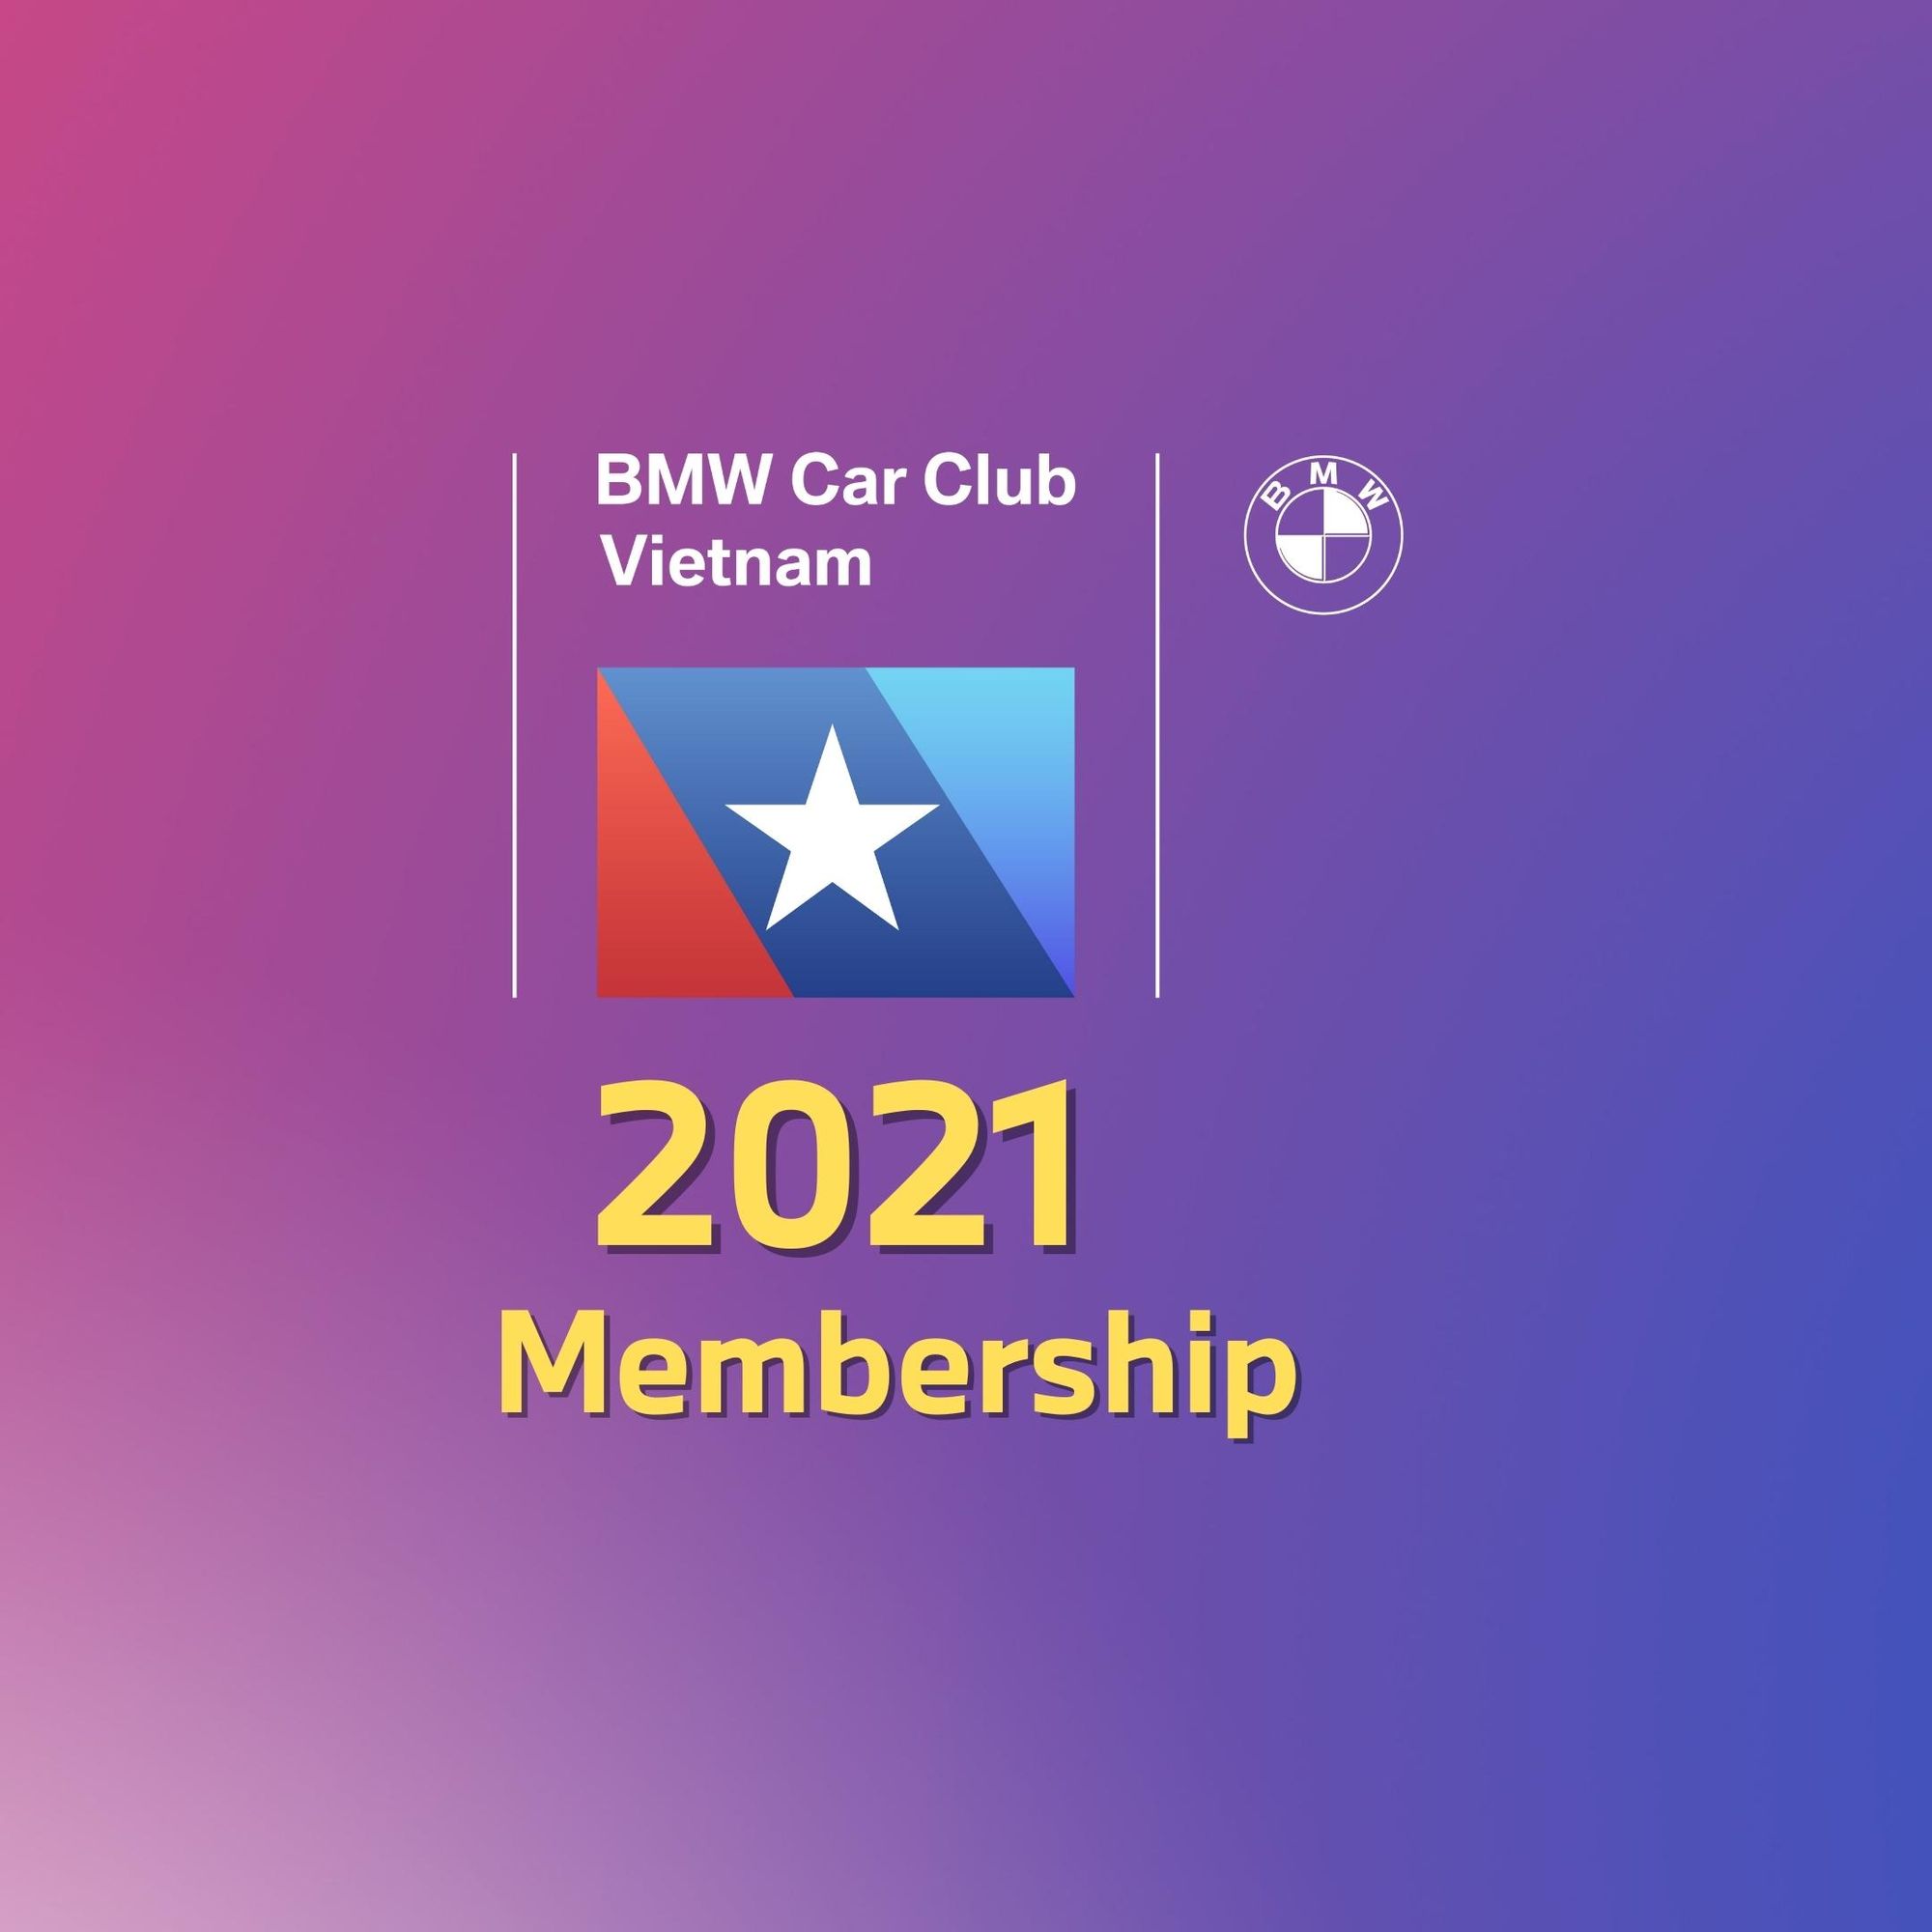 Thông báo về việc đăng ký mới và gia hạn Membership của BMW Car Club Vietnam năm 2021